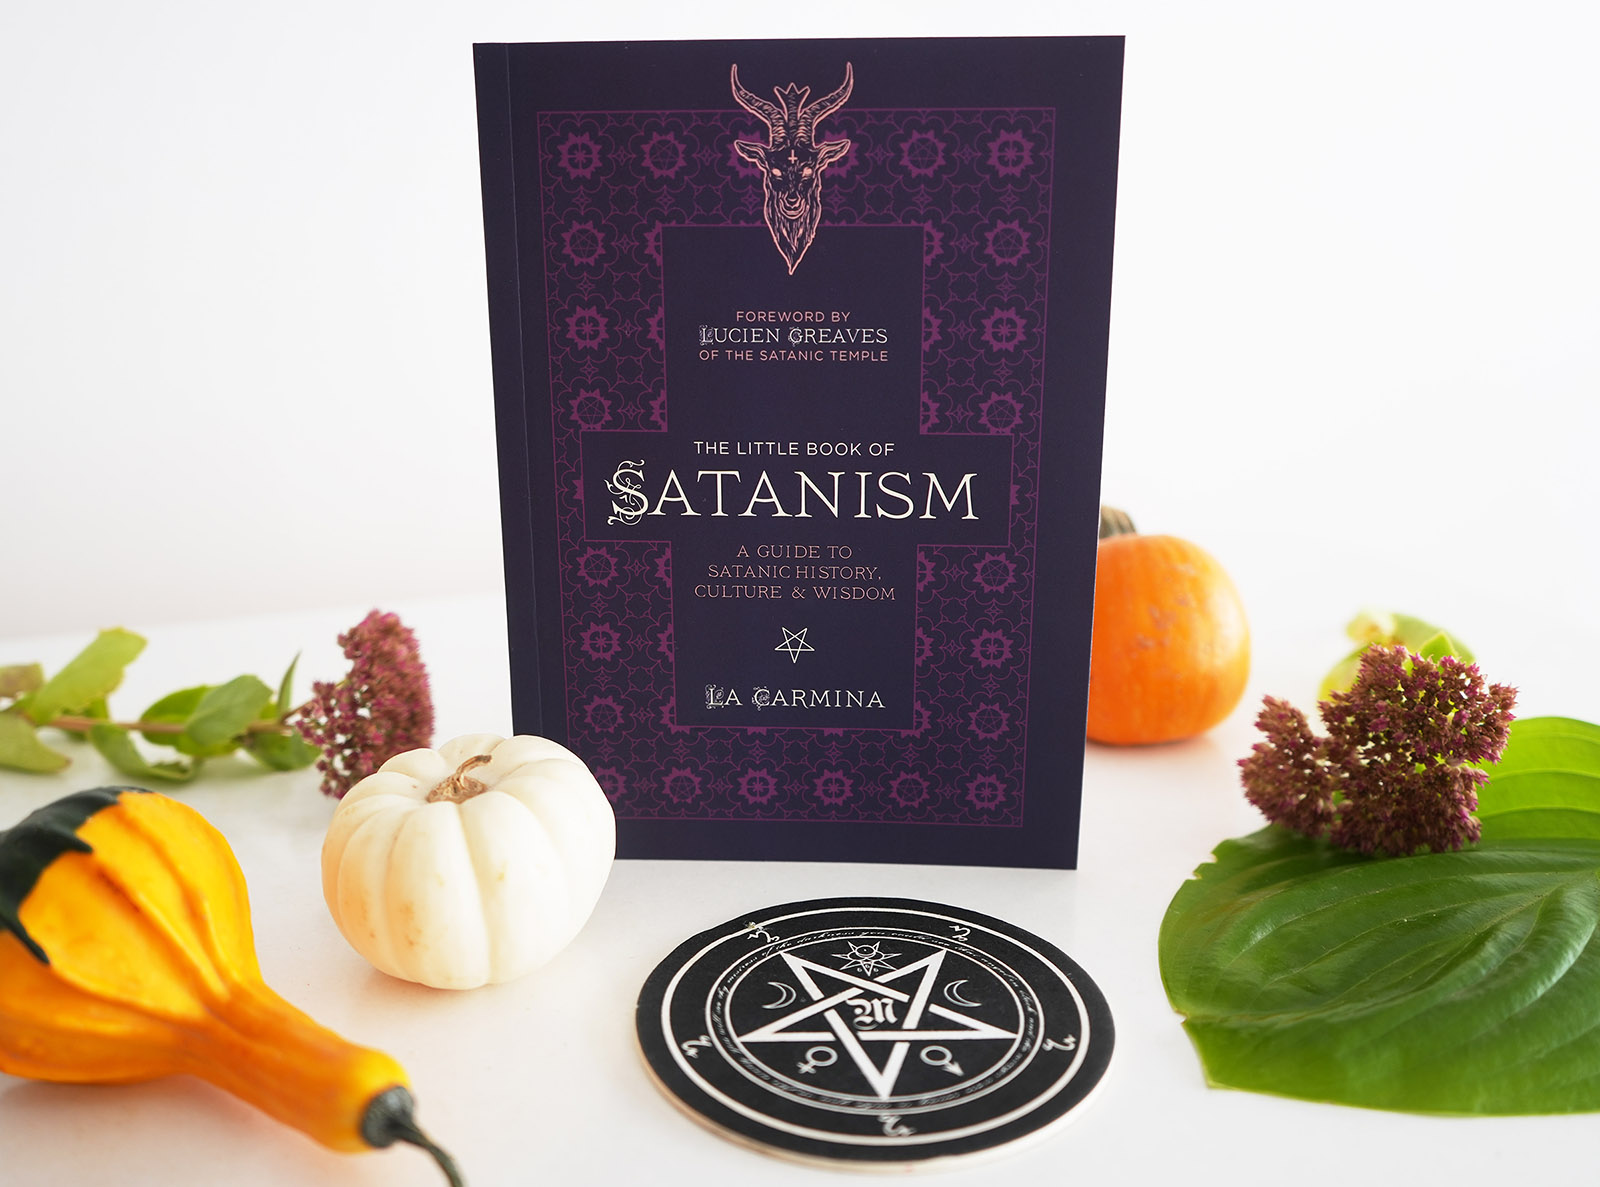 “The Little Book of Satanism" by La Carmina. Photo courtesy of La Carmina/lacarmina.com